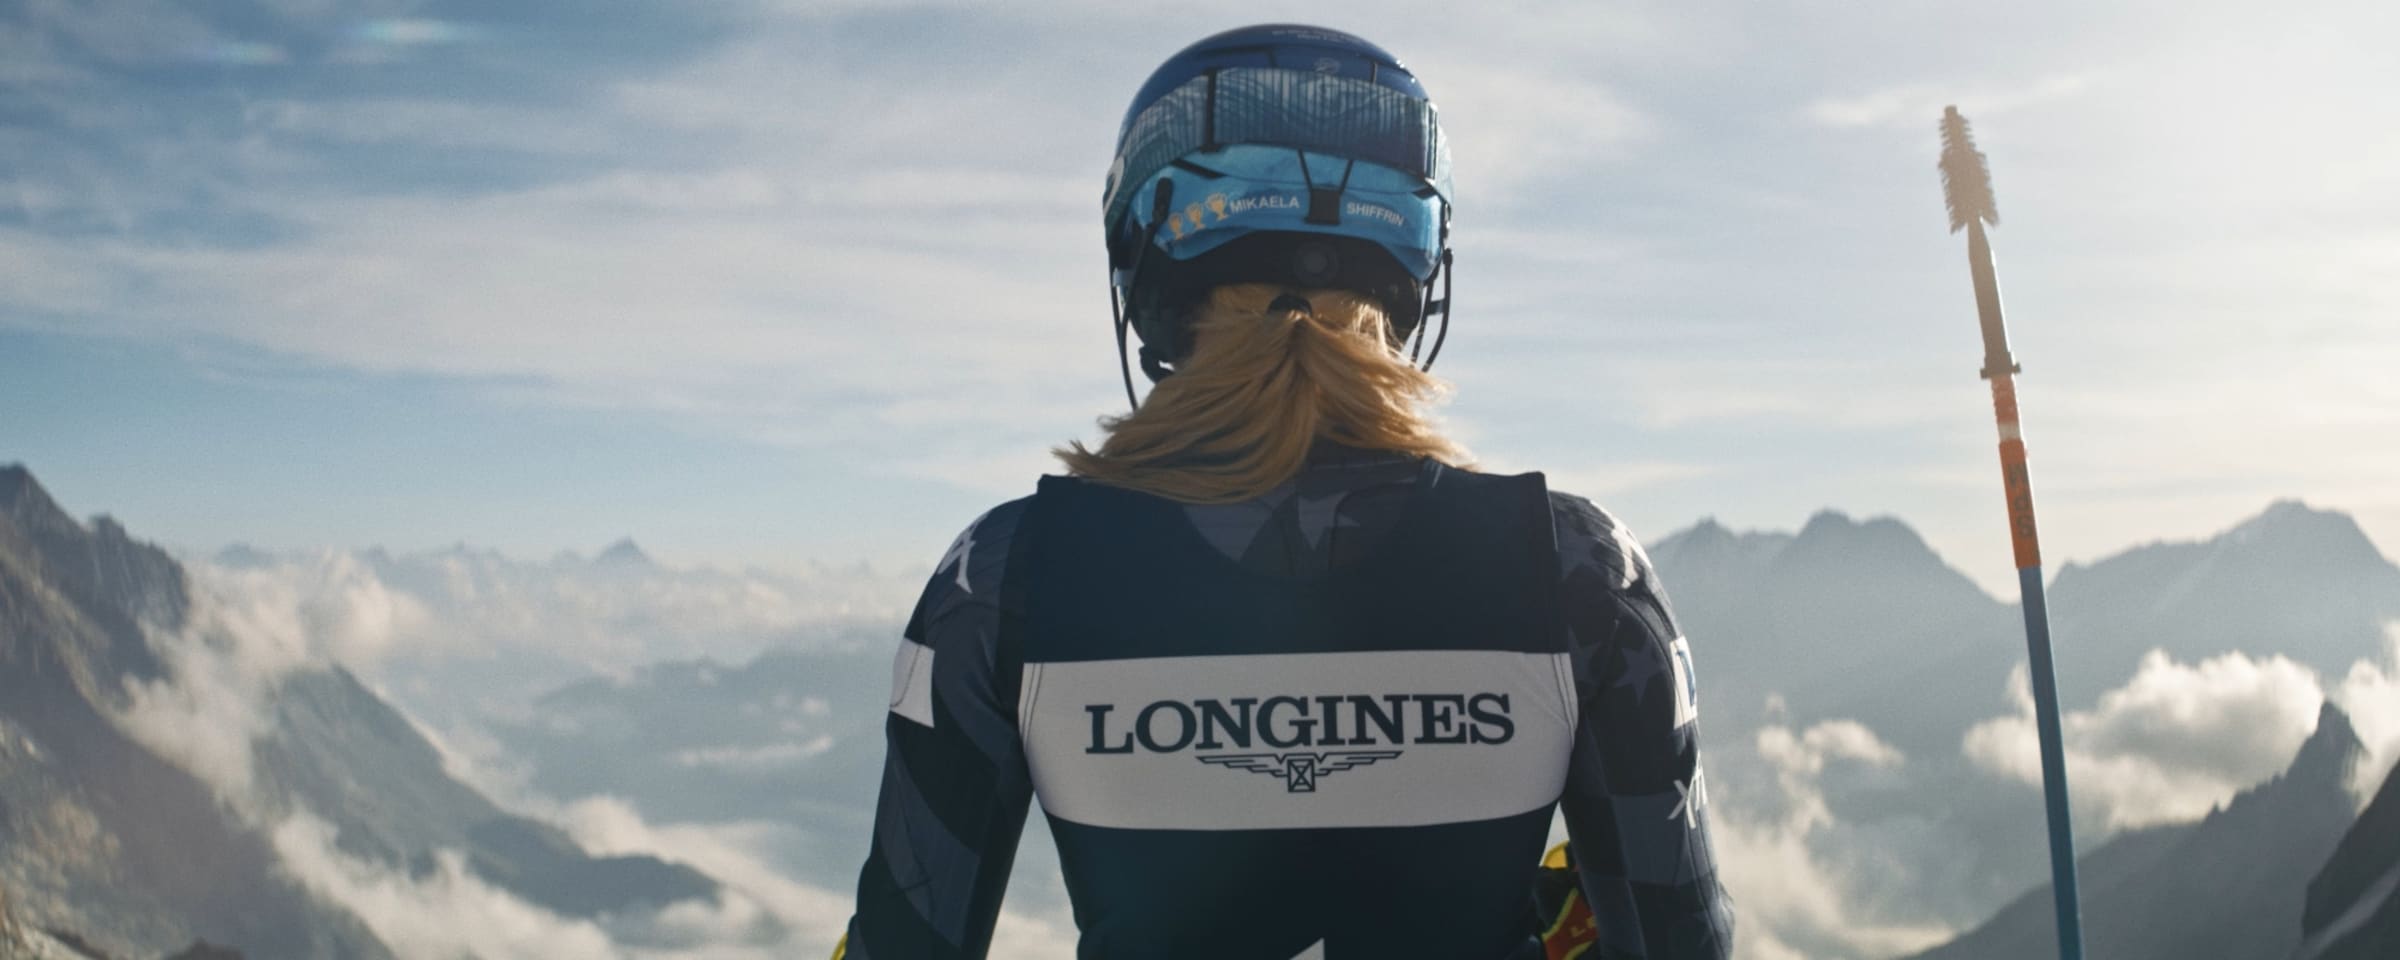 alpine-skiing_rectangular_large_push